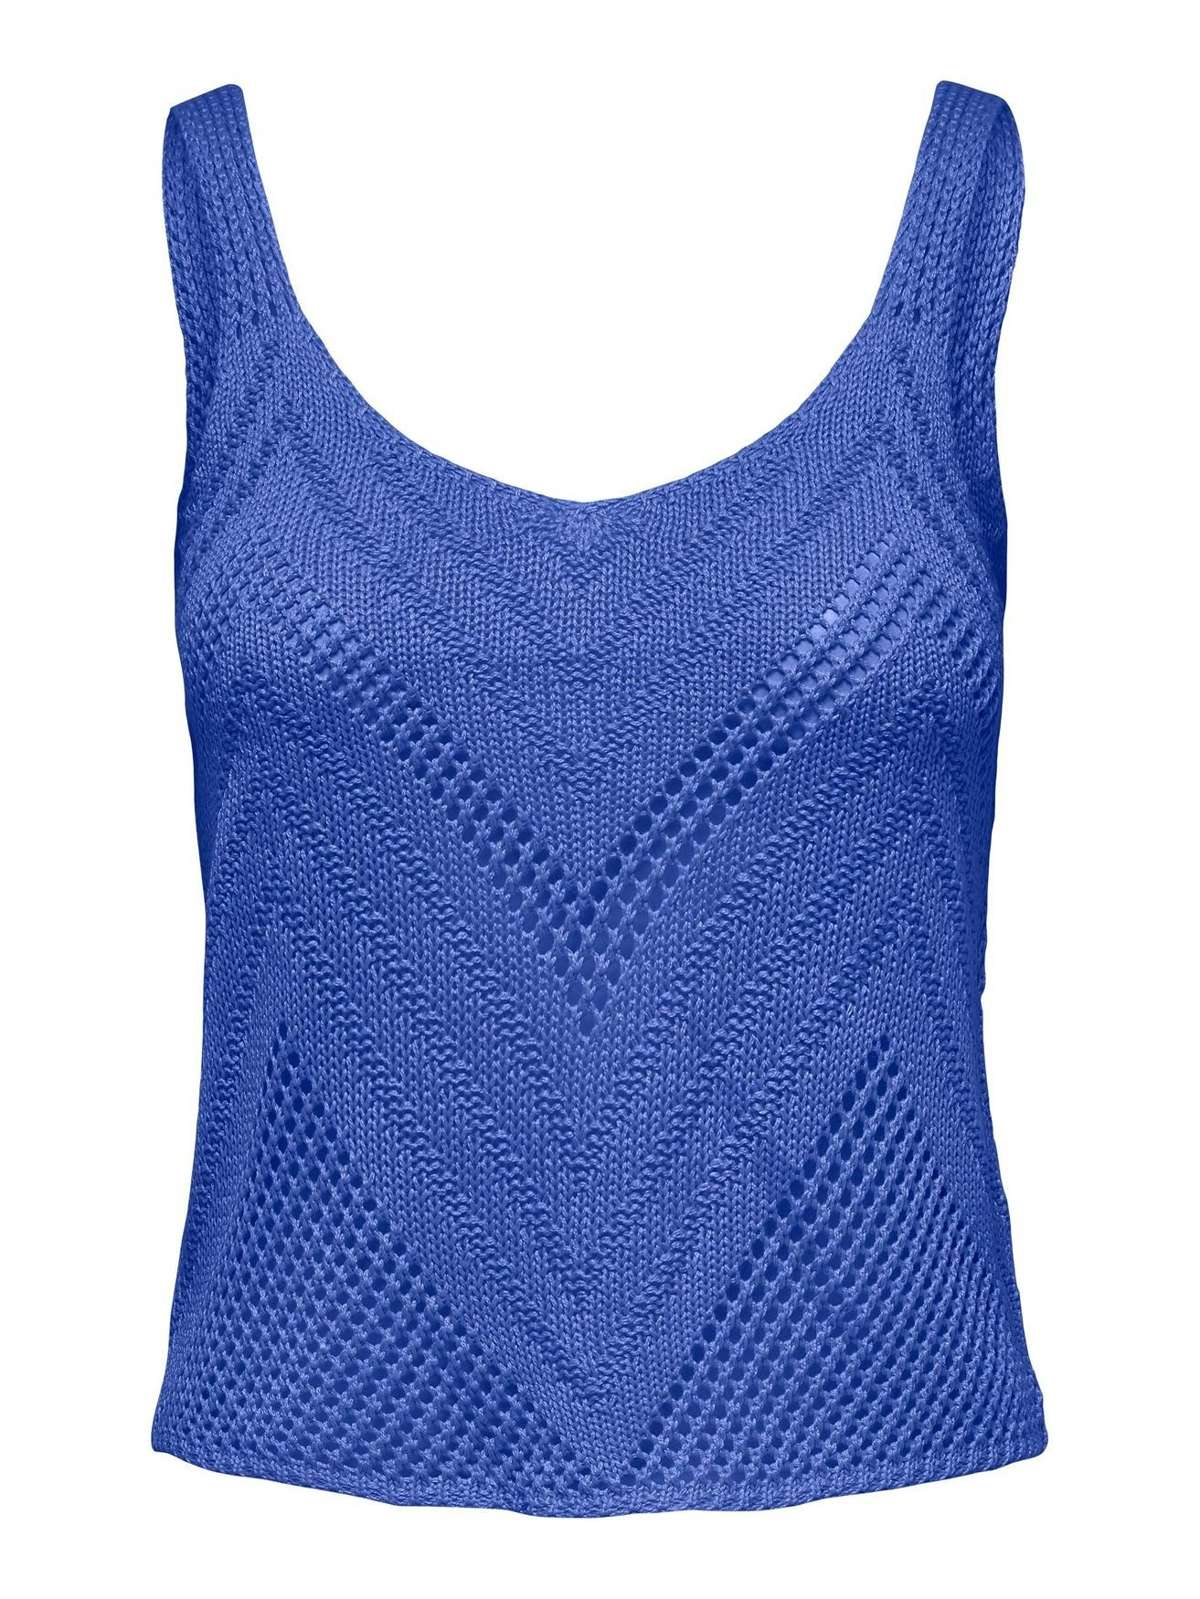 Рубашка Структурированный вязаный топ Майка без рукавов Рубашка JDYSUN 4912 синего цвета-2